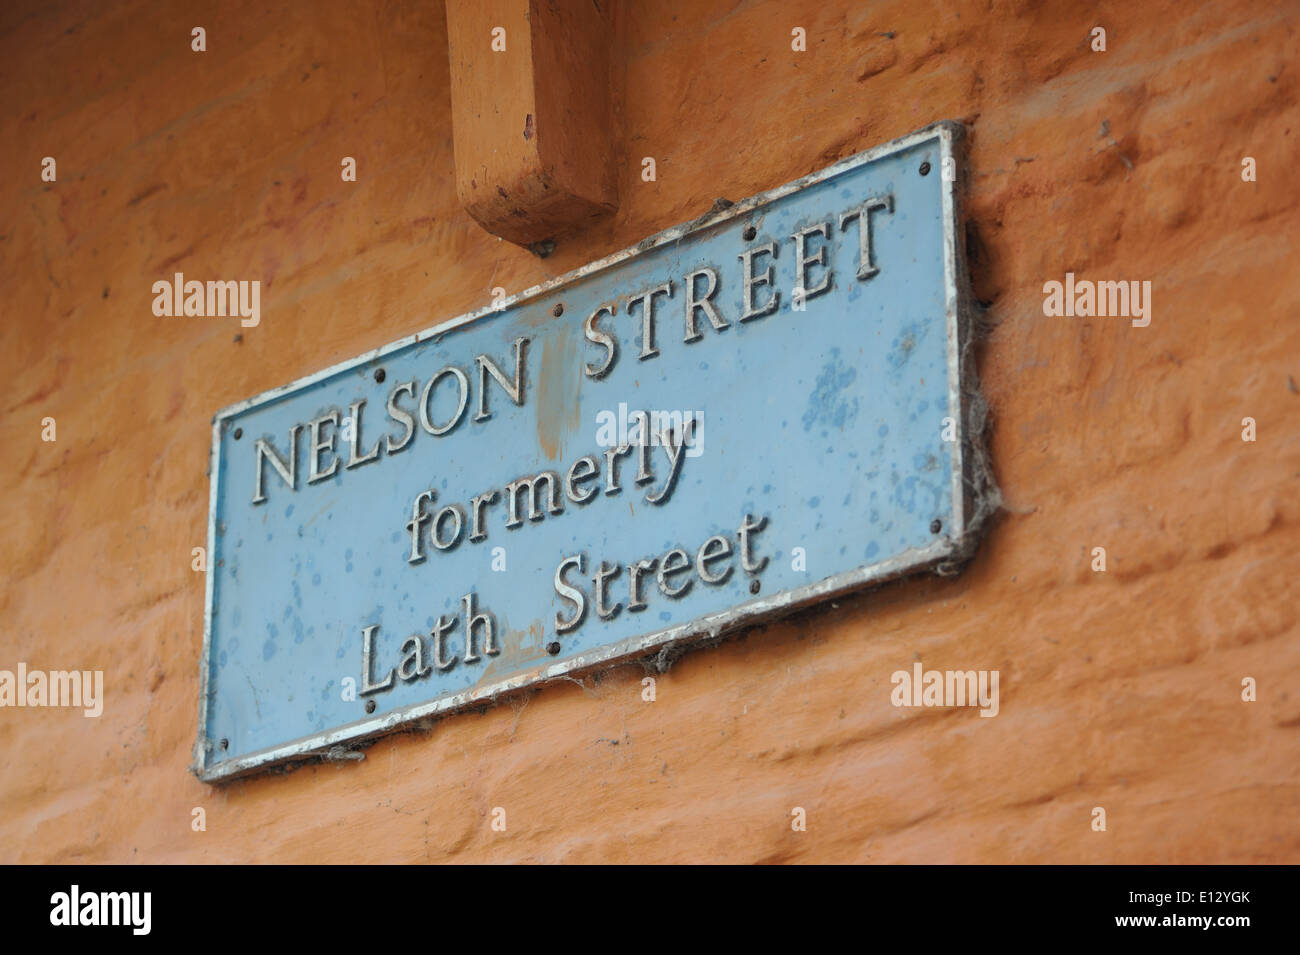 Himmelblau Straßenschild auf eine braun gestrichene Gebäude sagen "Nelson Street früher Lath Street" King's Lynn, Norfolk. Stockfoto